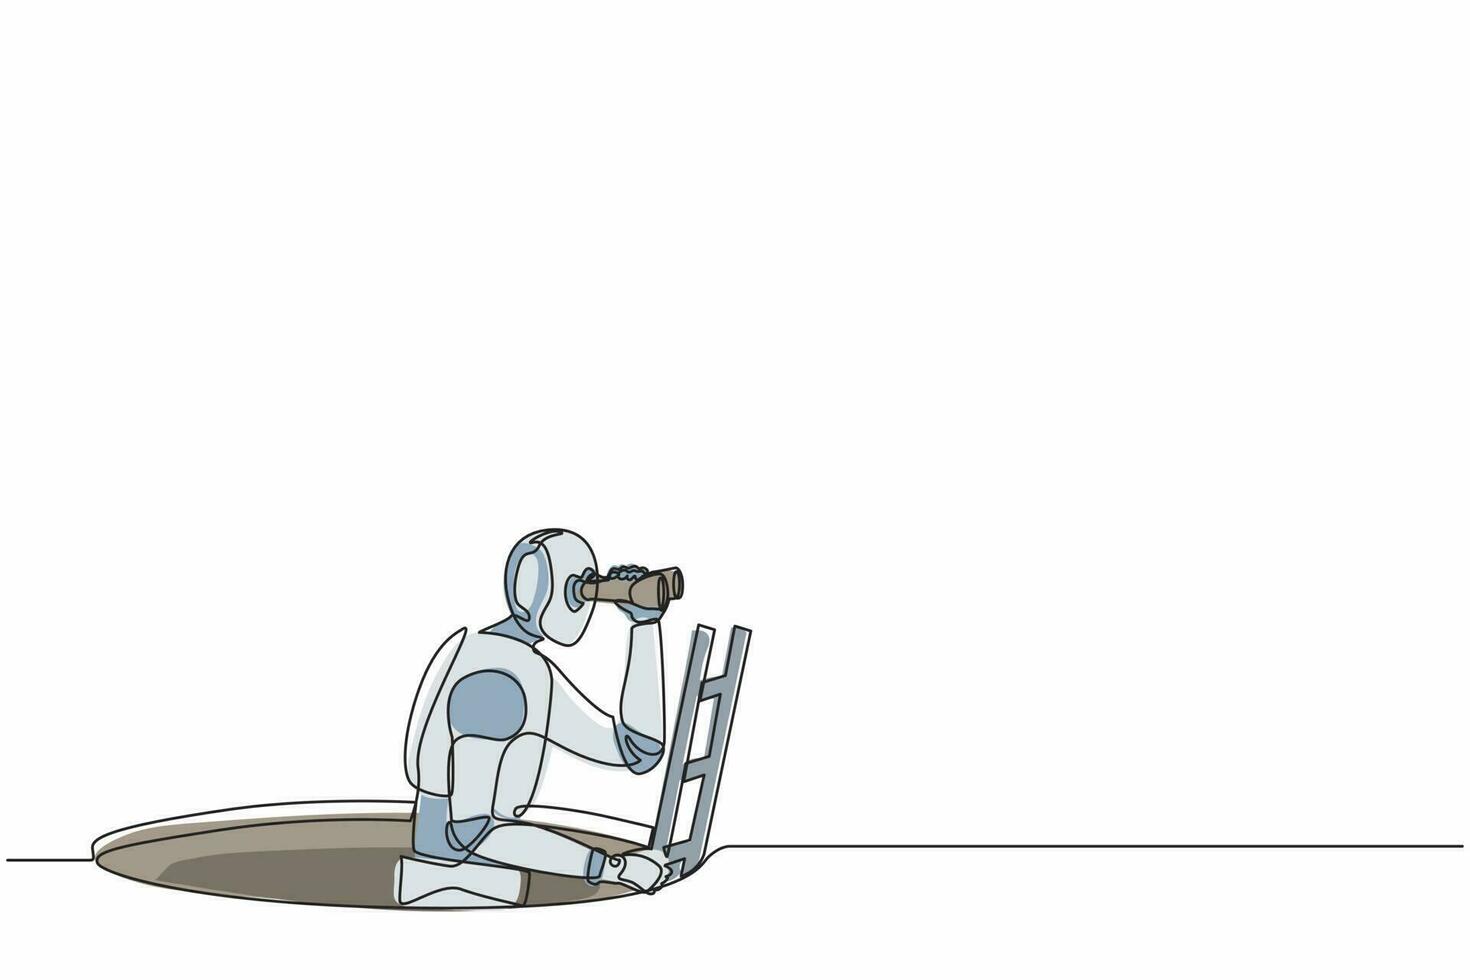 enkele doorlopende lijntekeningrobot klimt uit het gat met een ladder en met een verrekijker. robotica kunstmatige intelligentie technologie. elektronische technologie. één lijn tekenen ontwerp vectorillustratie vector